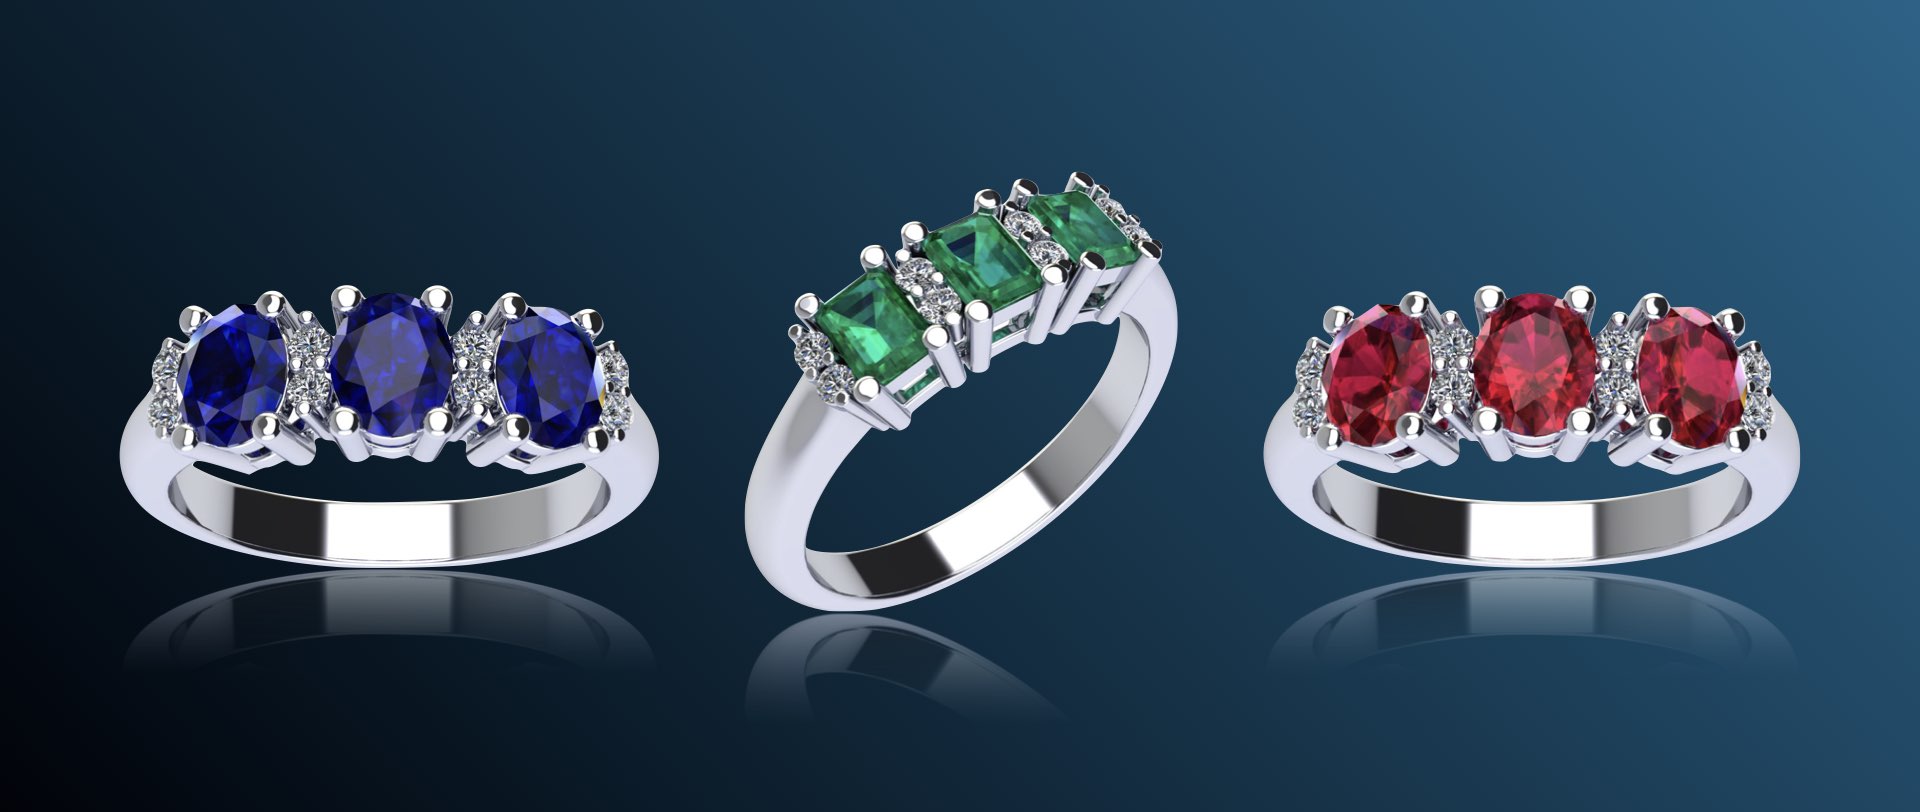 anelli trilogy con smeraldi, zaffiri e rubini